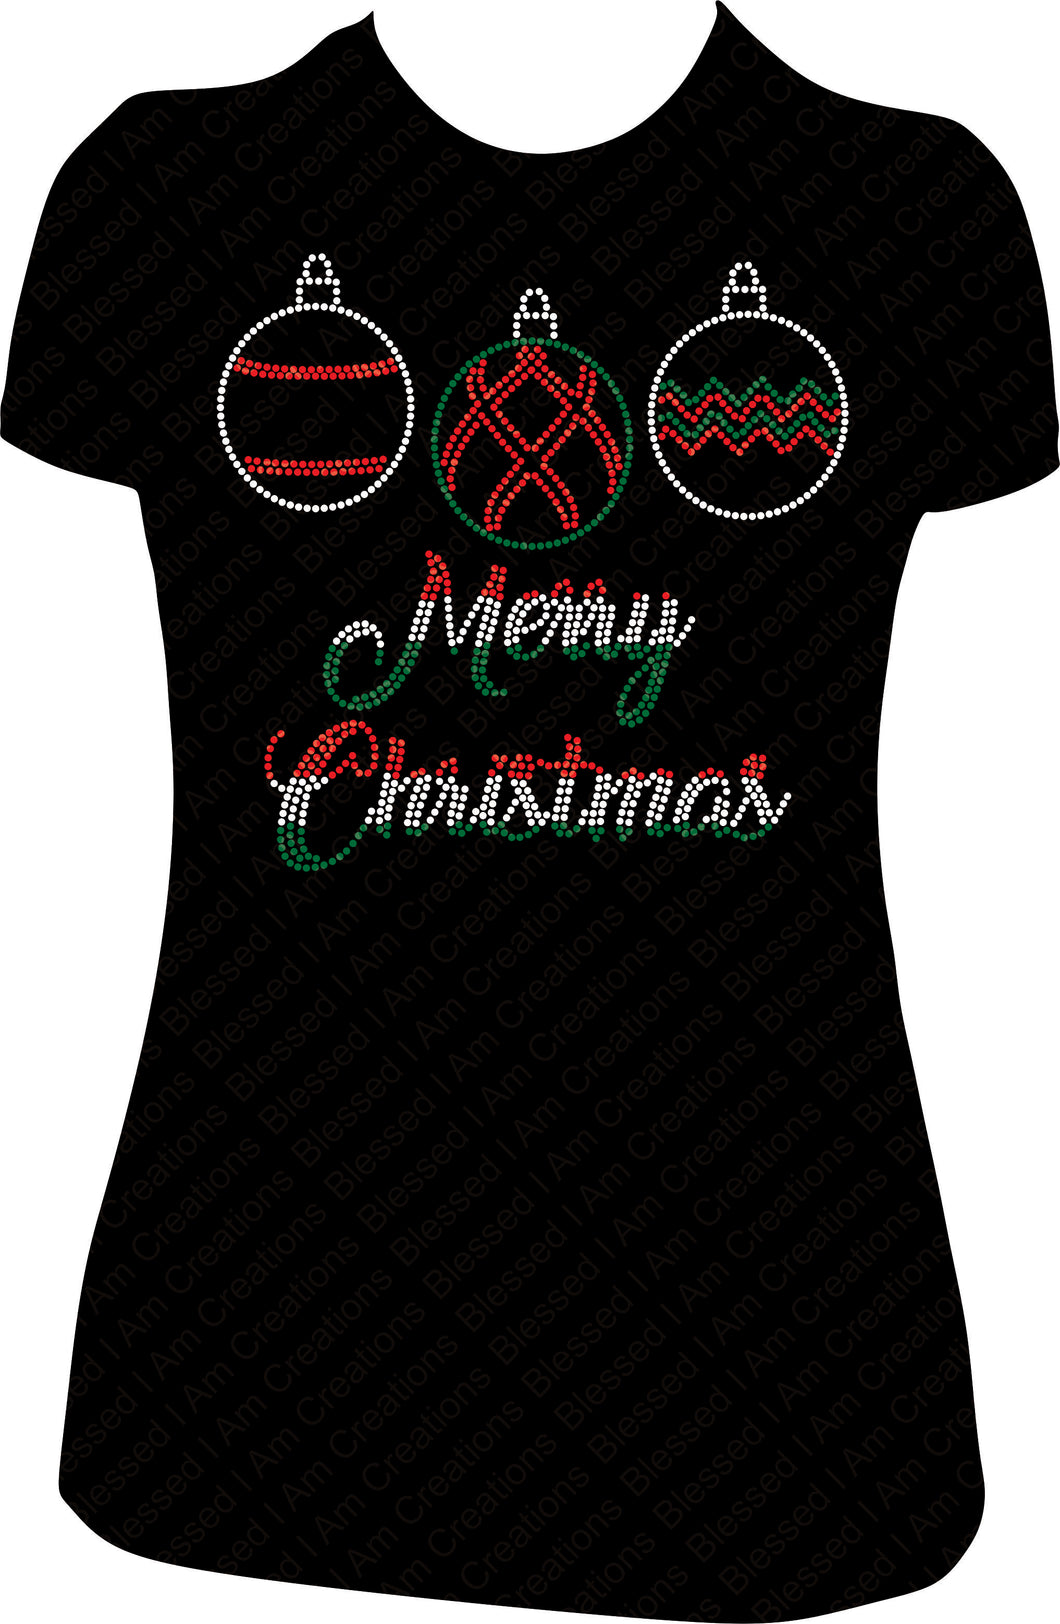 Merry Christmas Three Ornament Rhinestone Shirt